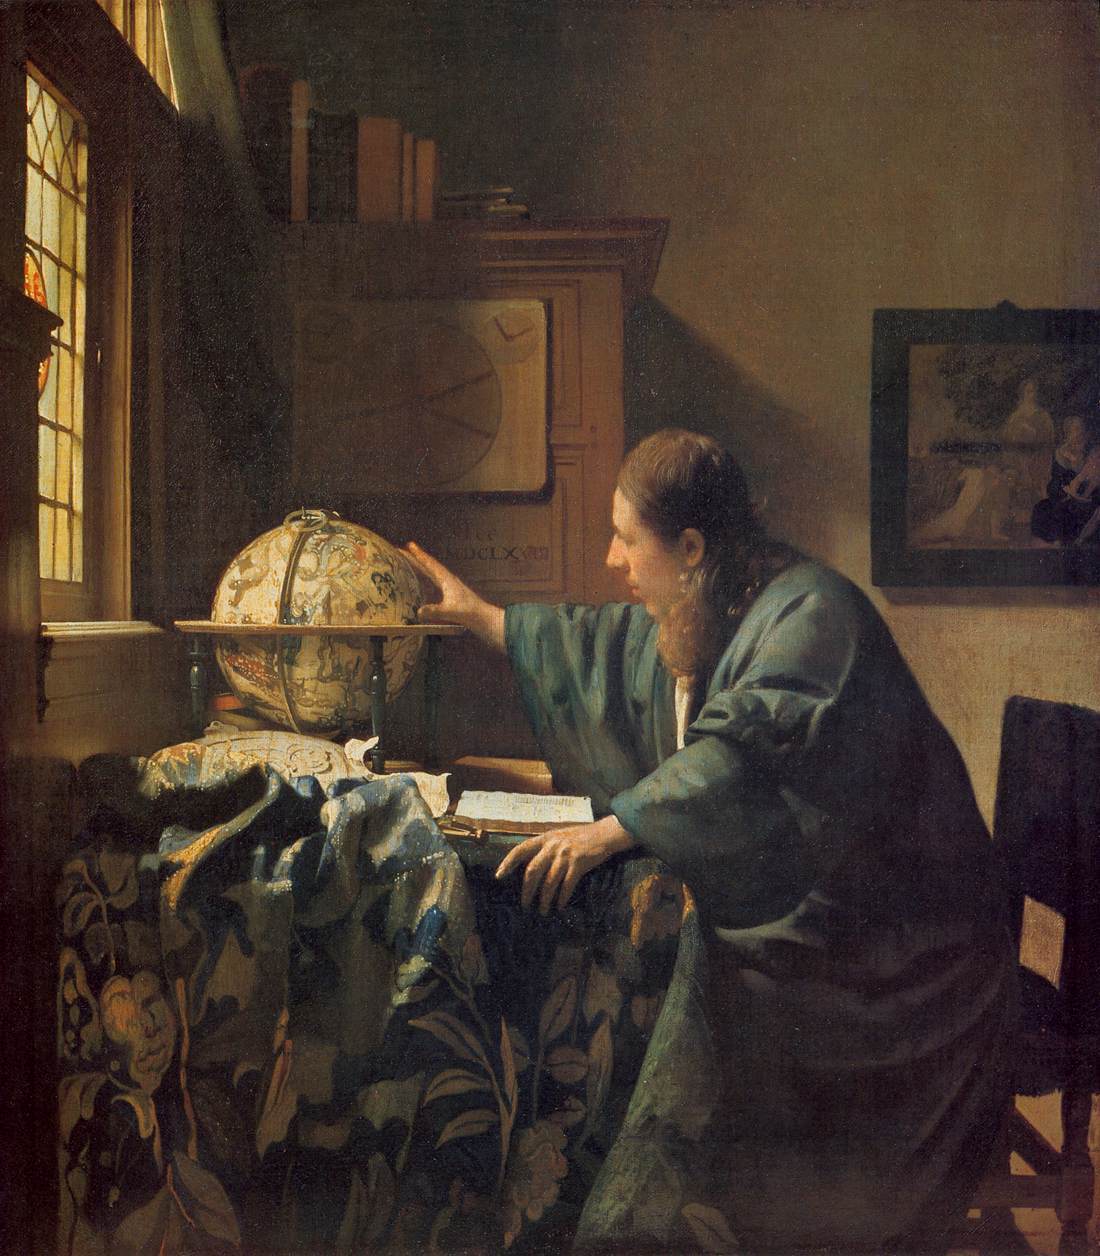 Vermeer_The_Astronomer_oc_Louvre.jpg